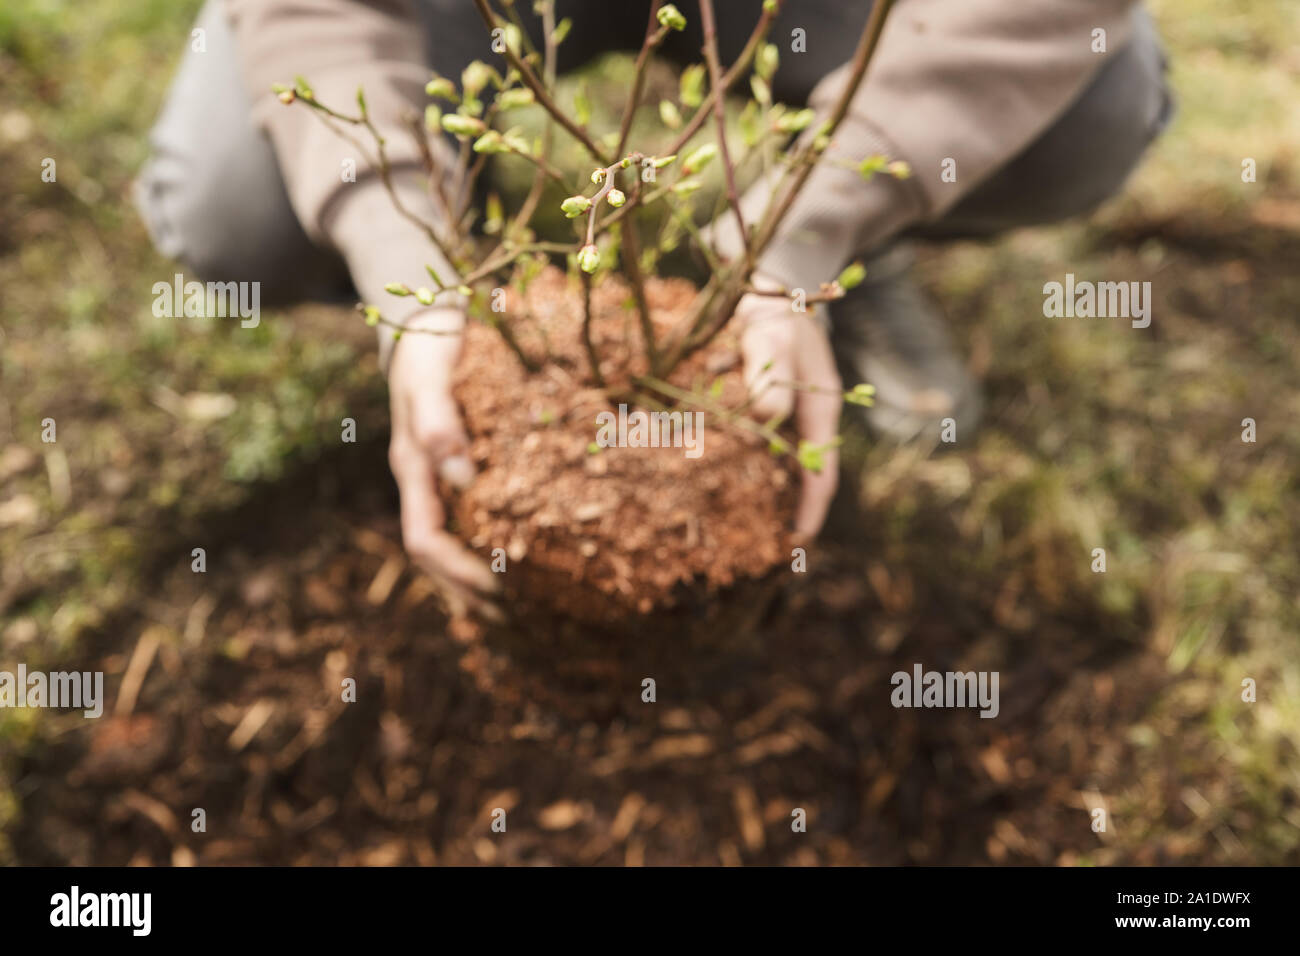 Frau einpflanzen einen Busch im Garten, Details von einem kleinen Größenmaß Stockfoto